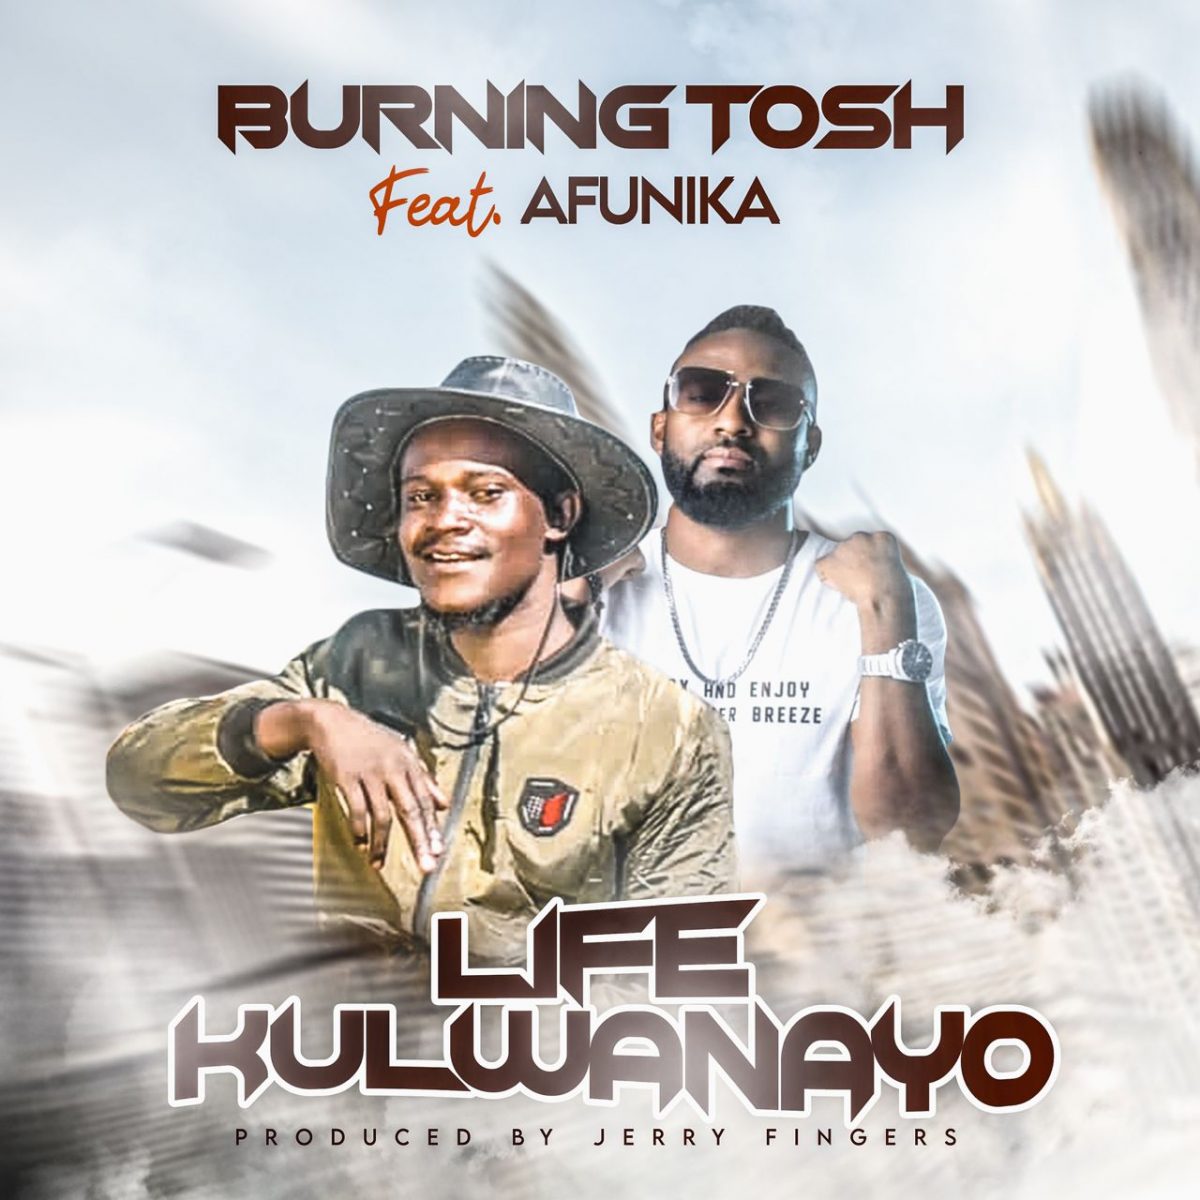 Burning Tosh ft. Afunika - Life Kulwanayo